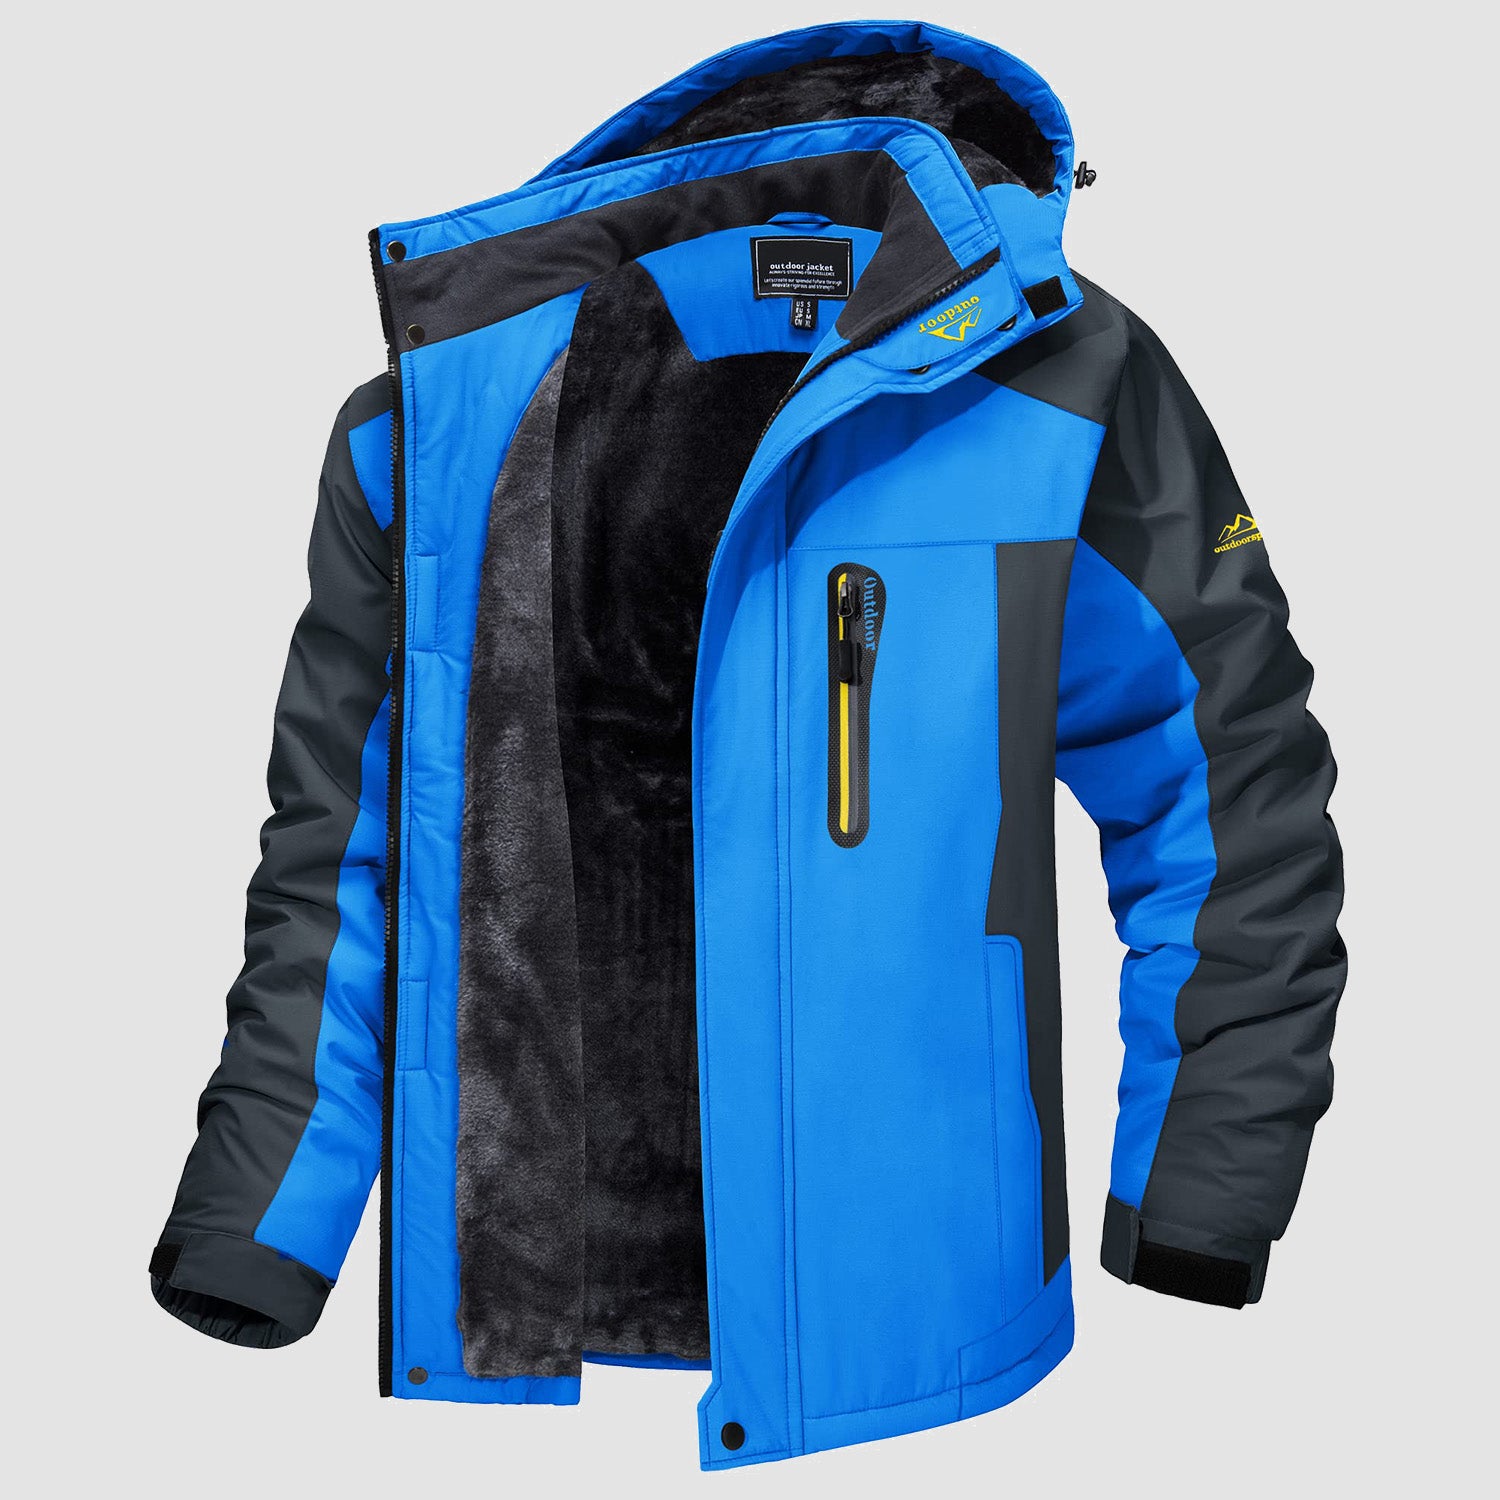 Men's Fleece Lined Parka Coats Water Resistant Winter Snow Jacket